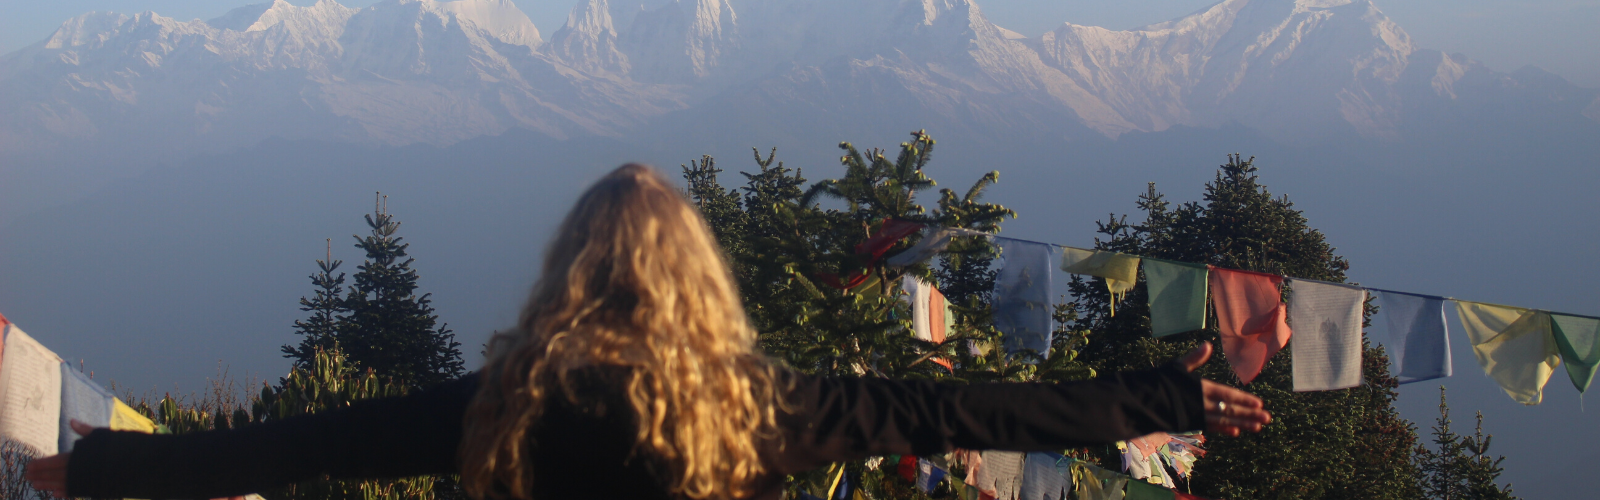 Carnet de voyage | Retour du Népal  Double Sens